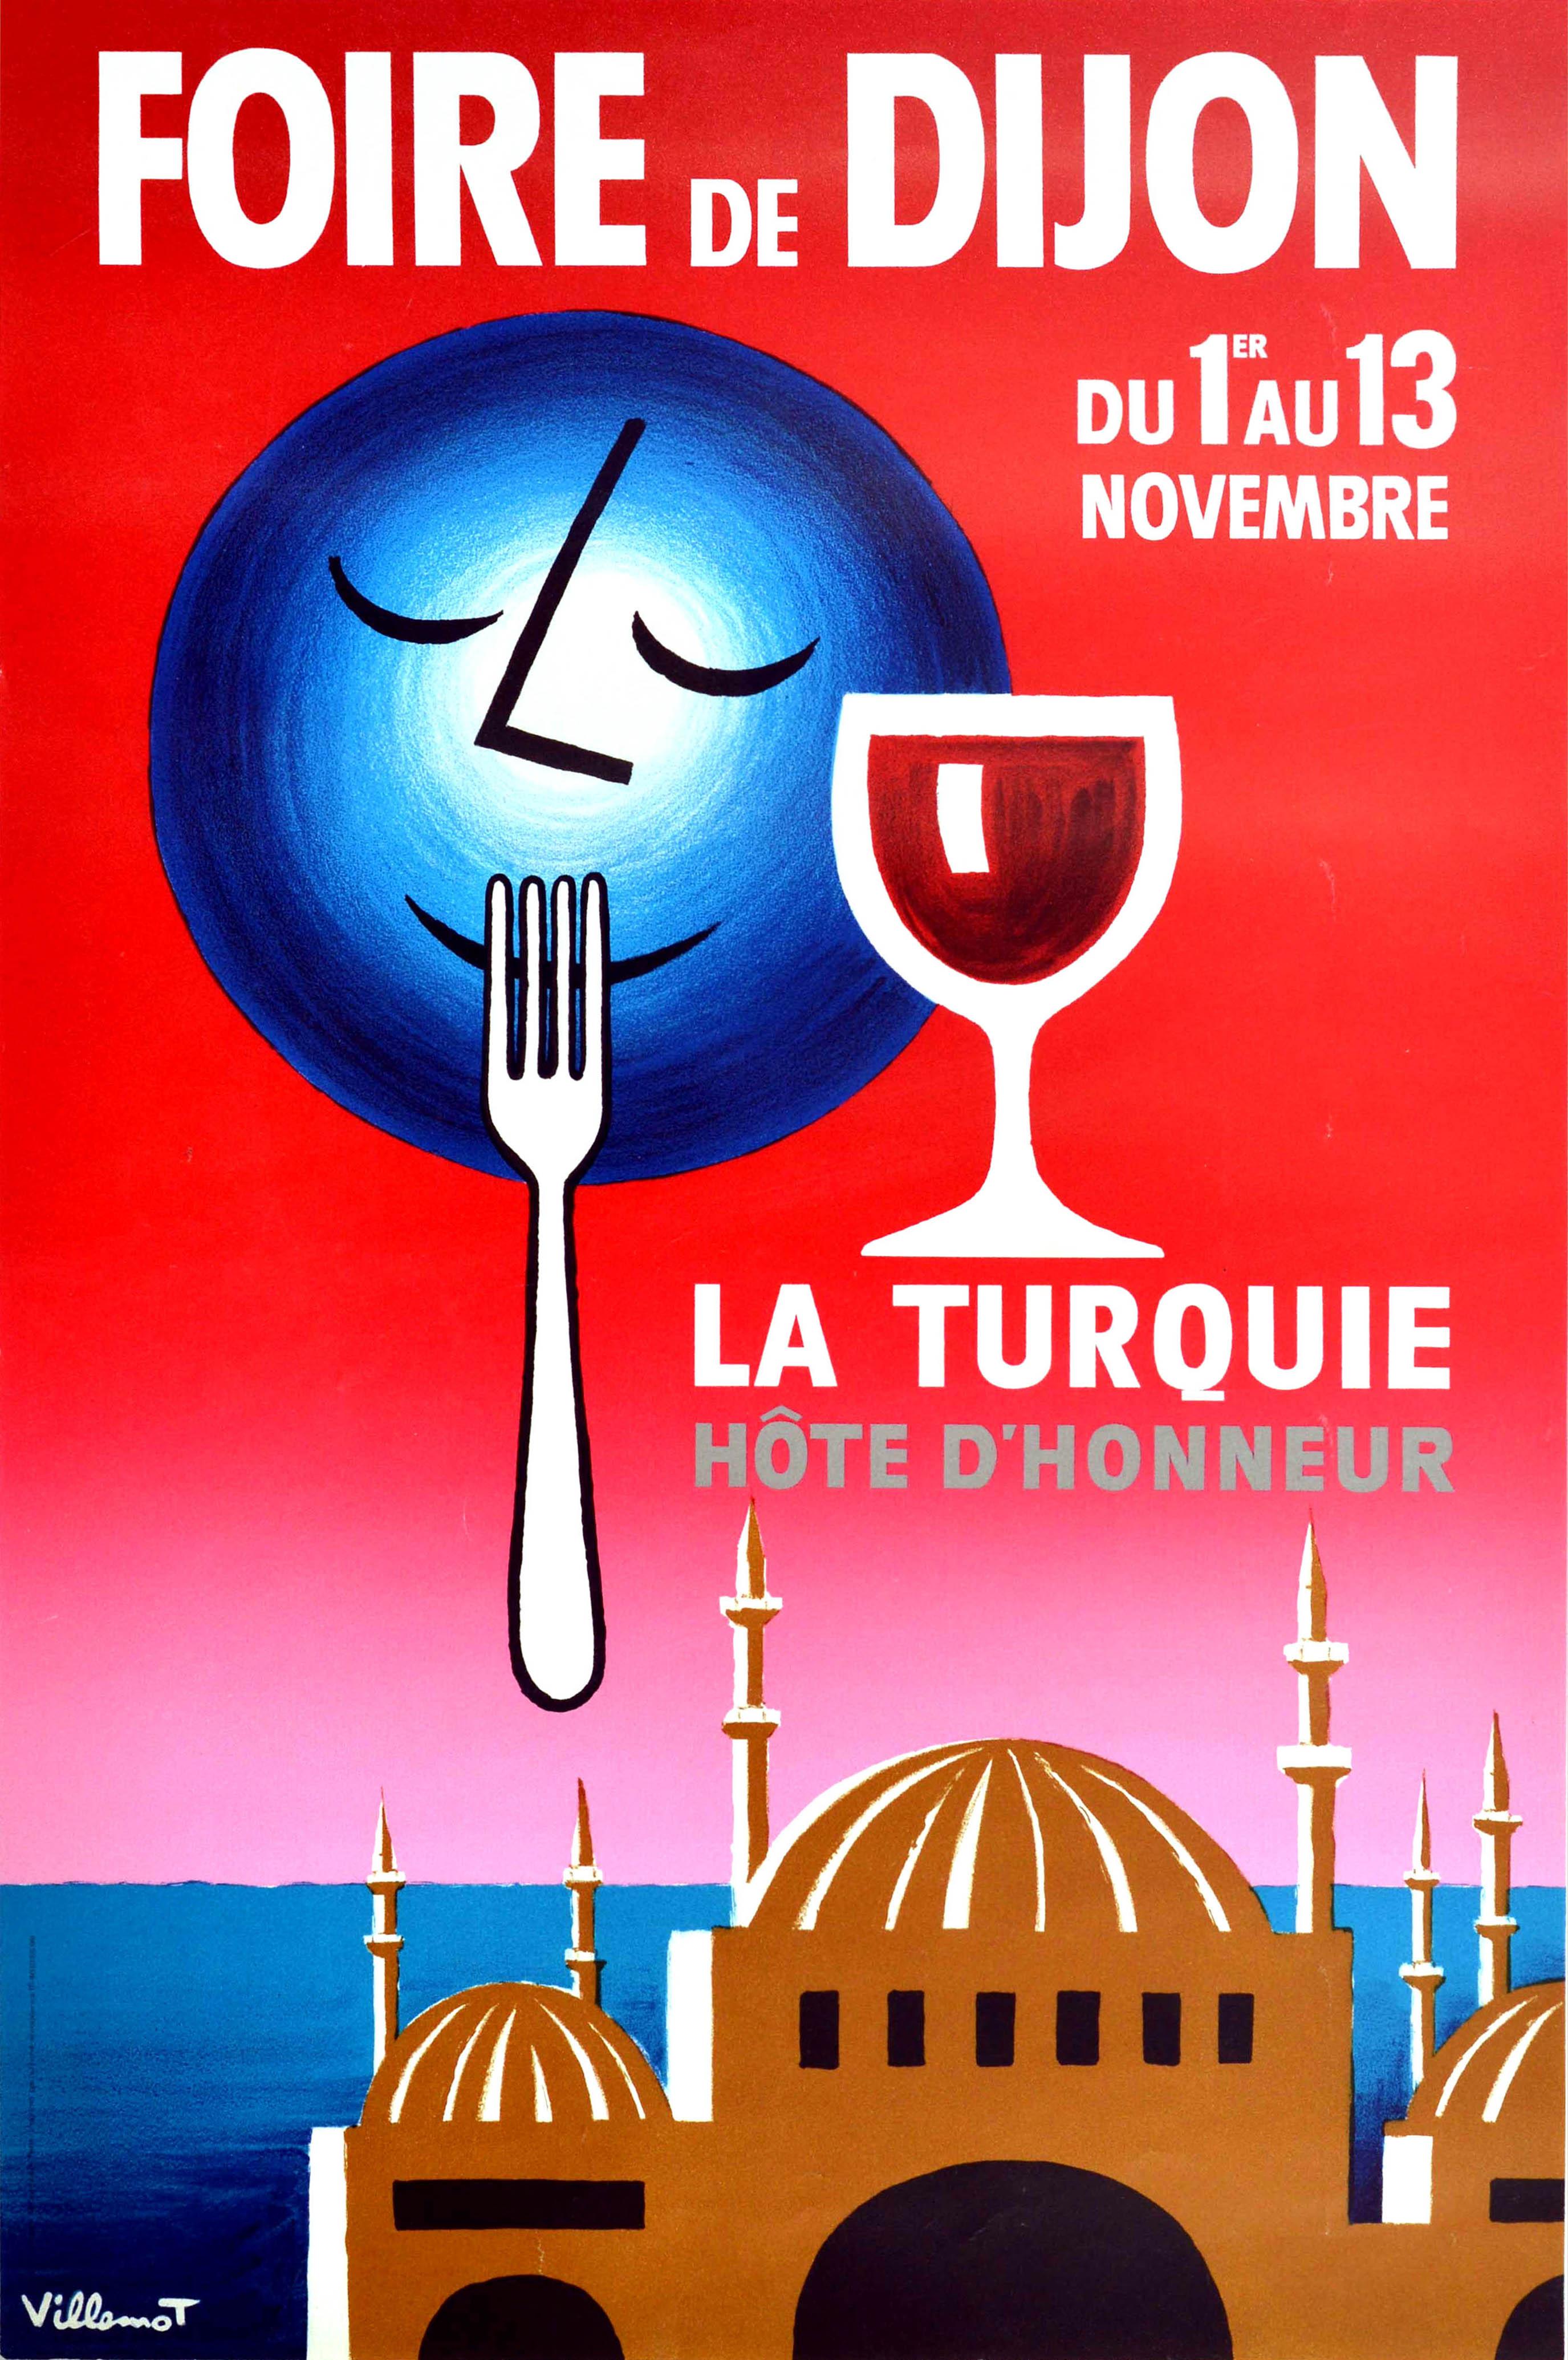 Bernard Villemot Print - Original Vintage Poster Foire De Dijon Food Fair La Turquie Hote dHonneur Turkey